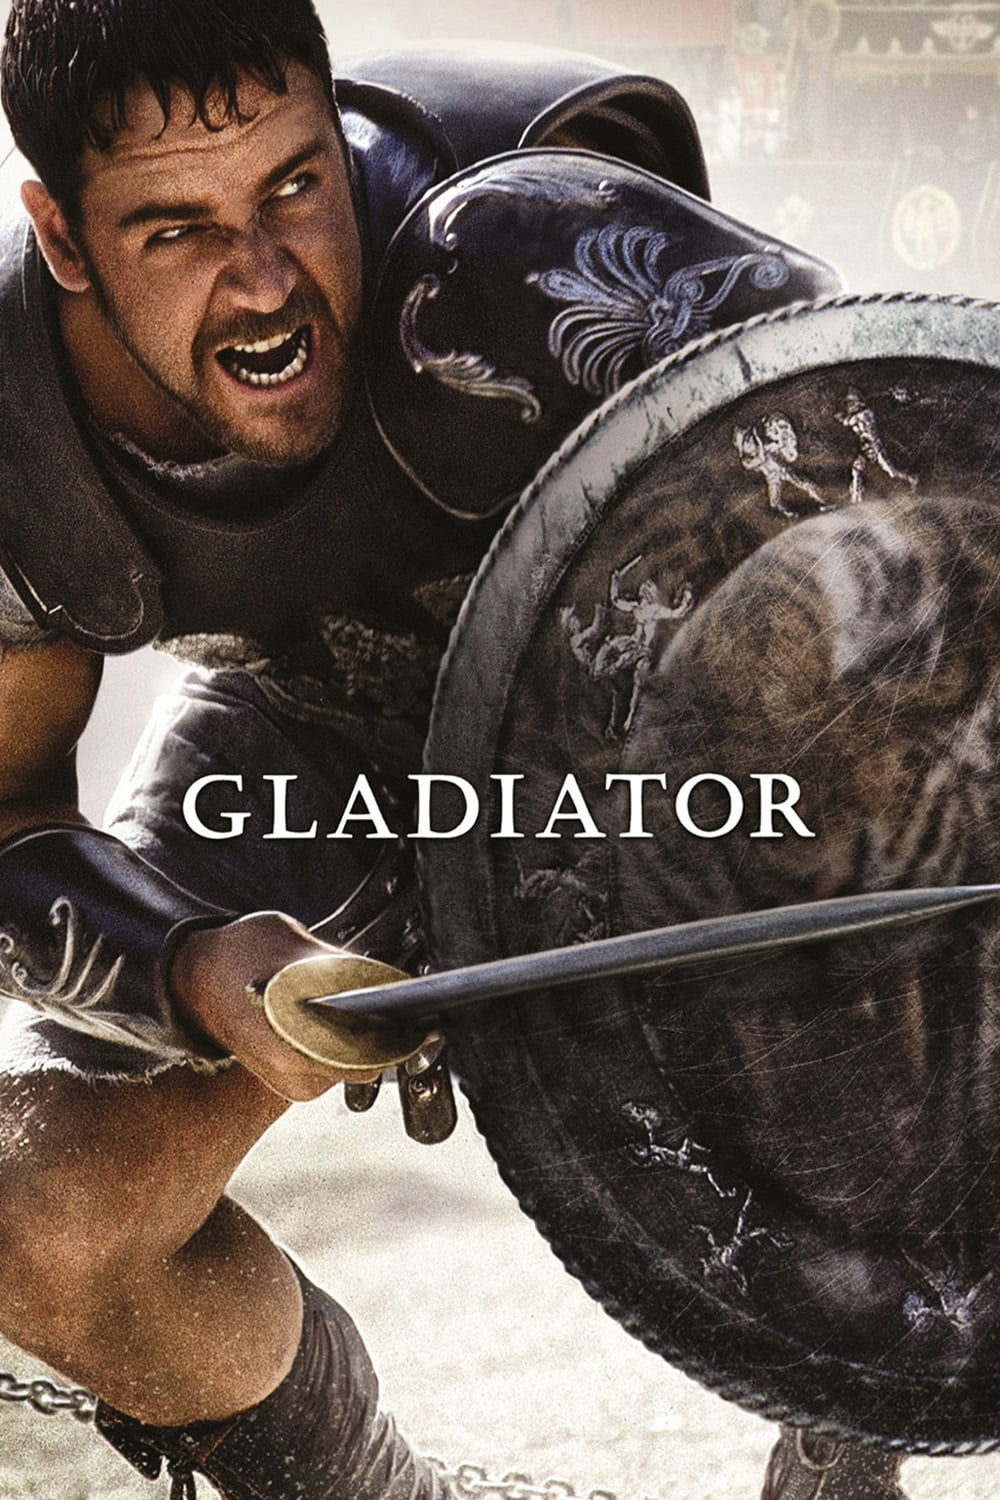 El gladiador